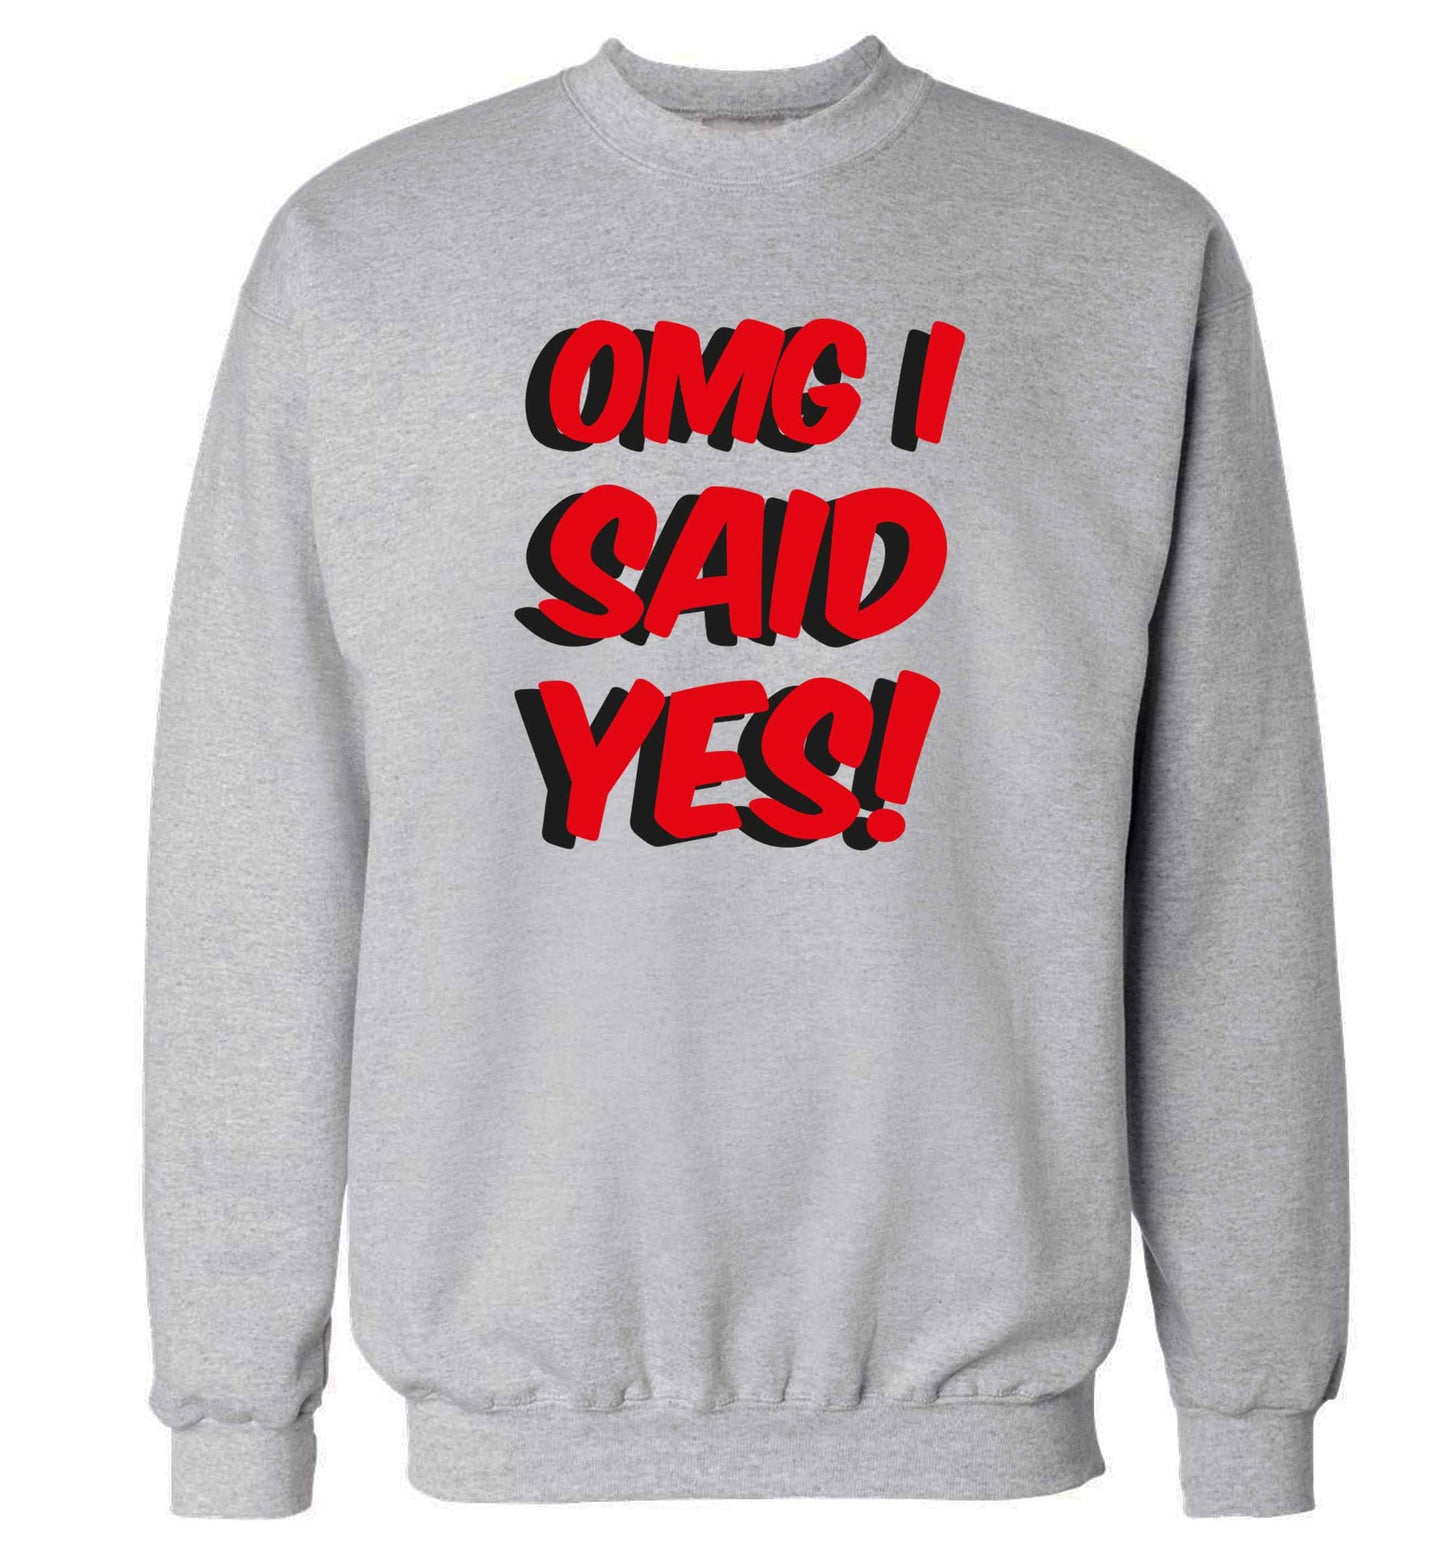 Omg I said yes adult's unisex grey sweater 2XL